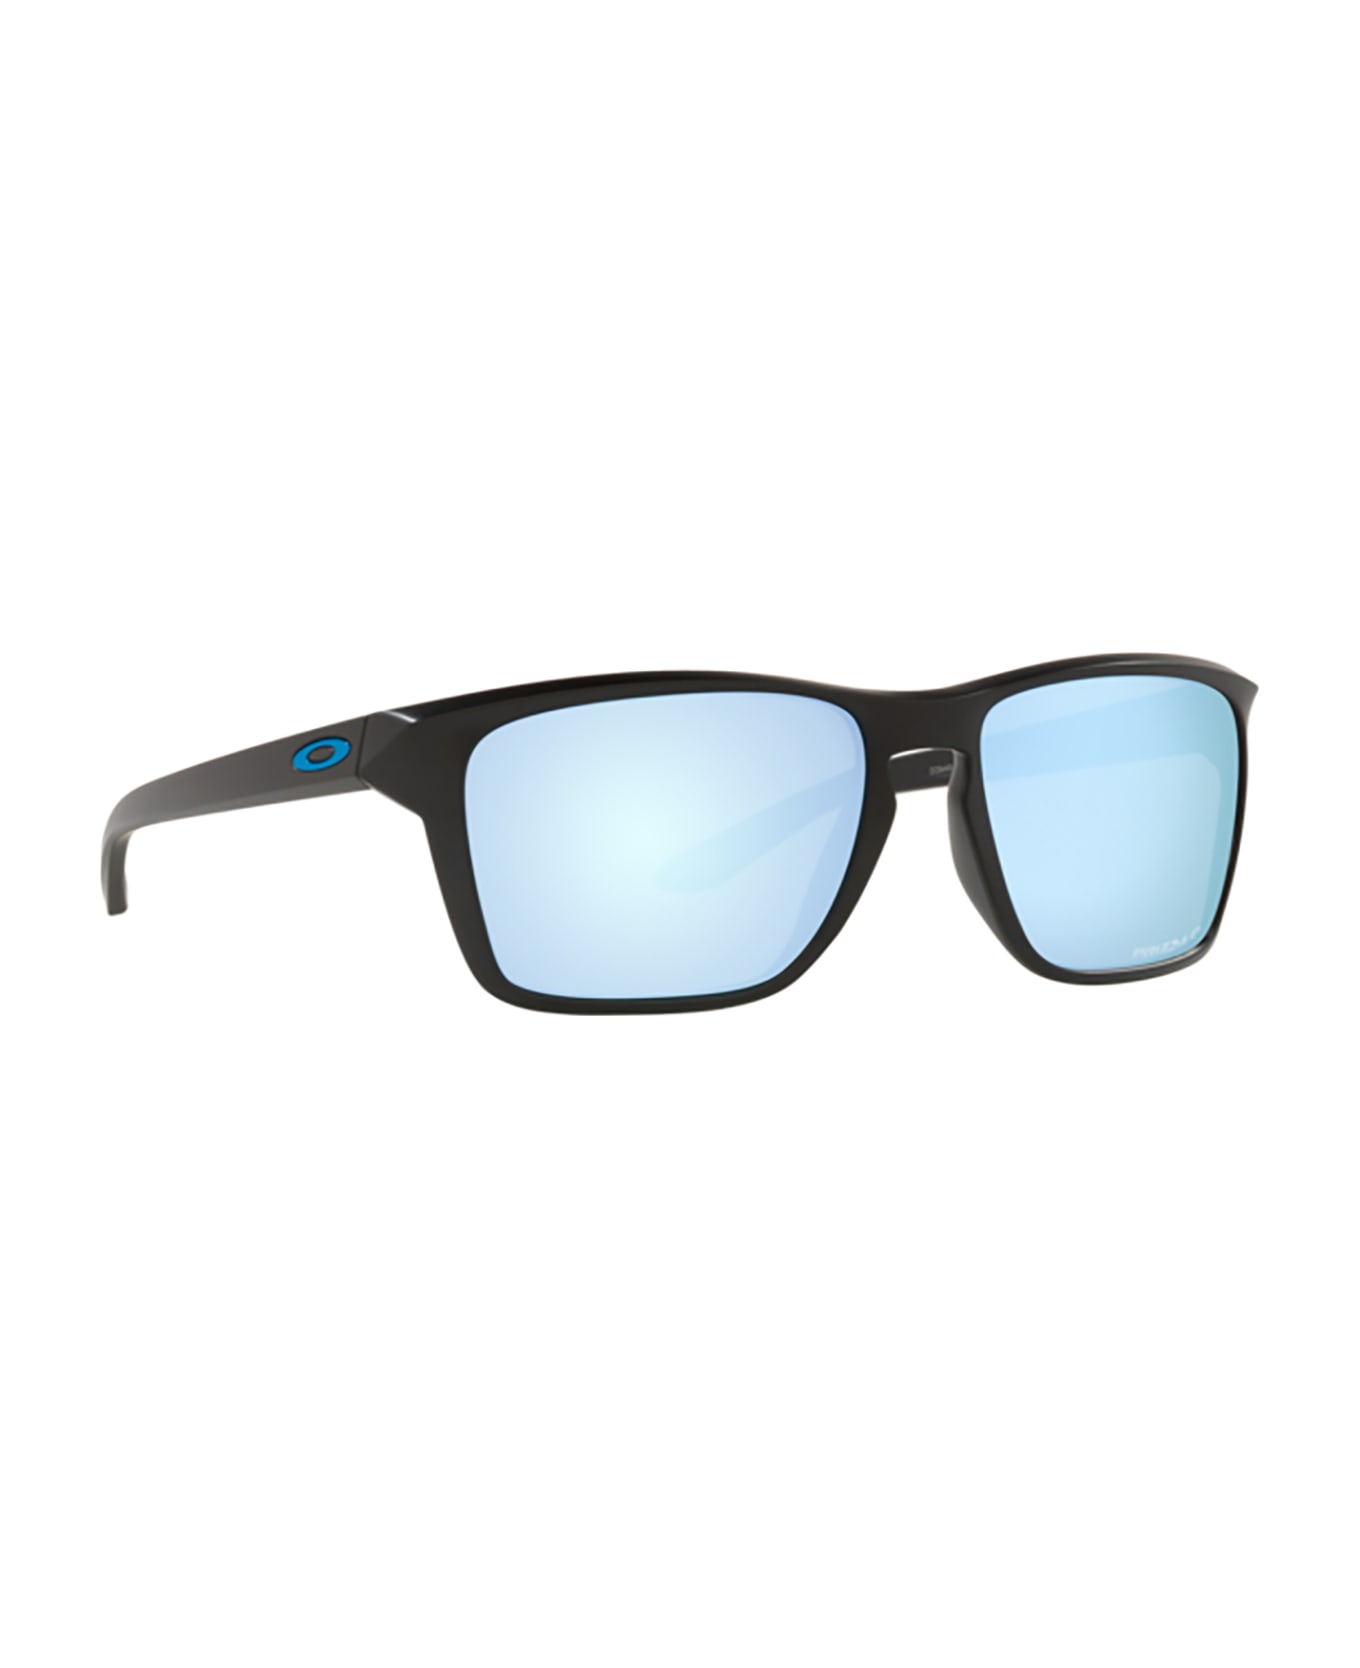 Oakley Oo9448 Matte Black Sunglasses - Matte black